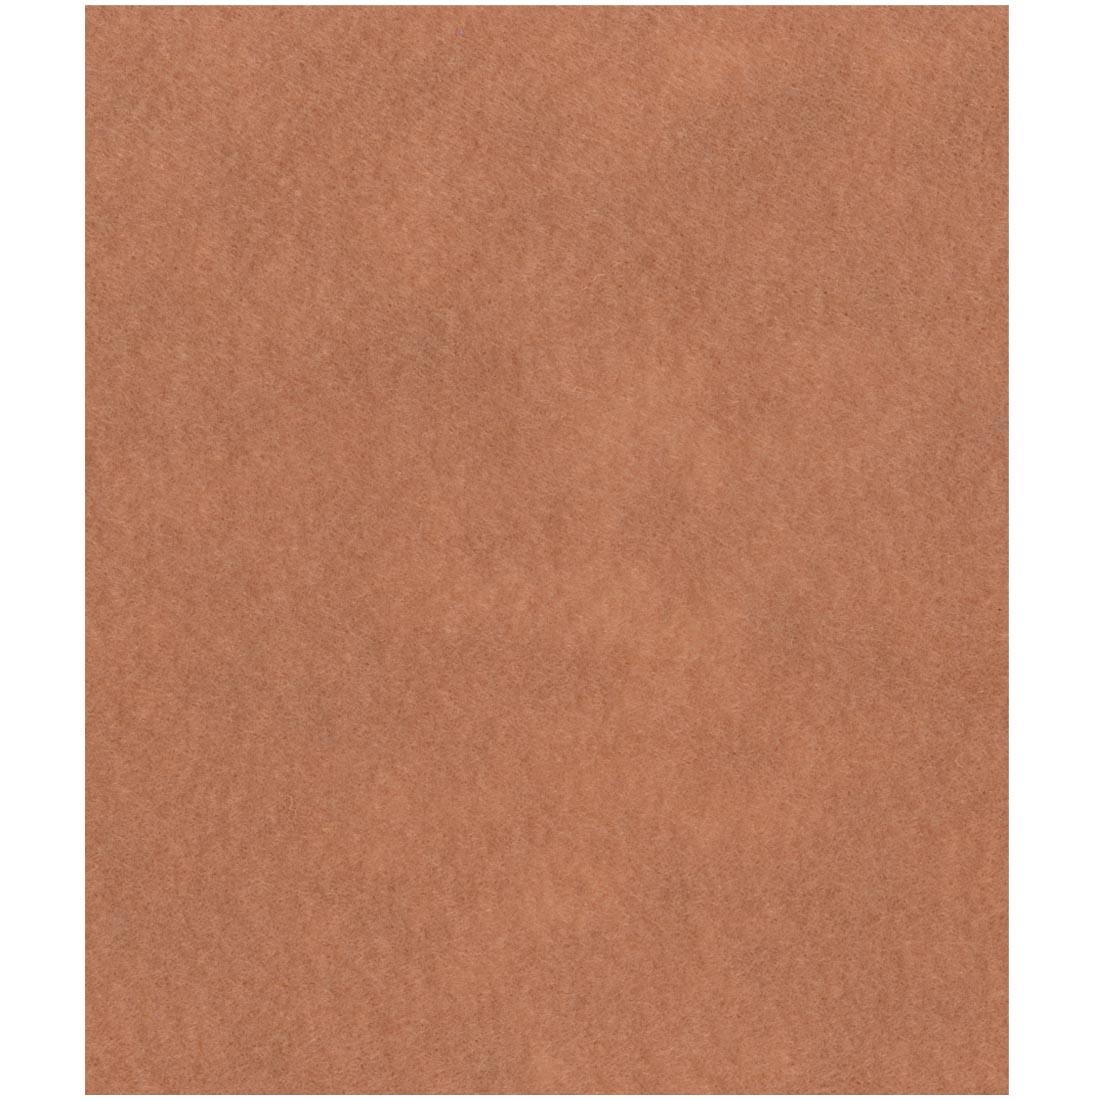 tan craft felt sheet